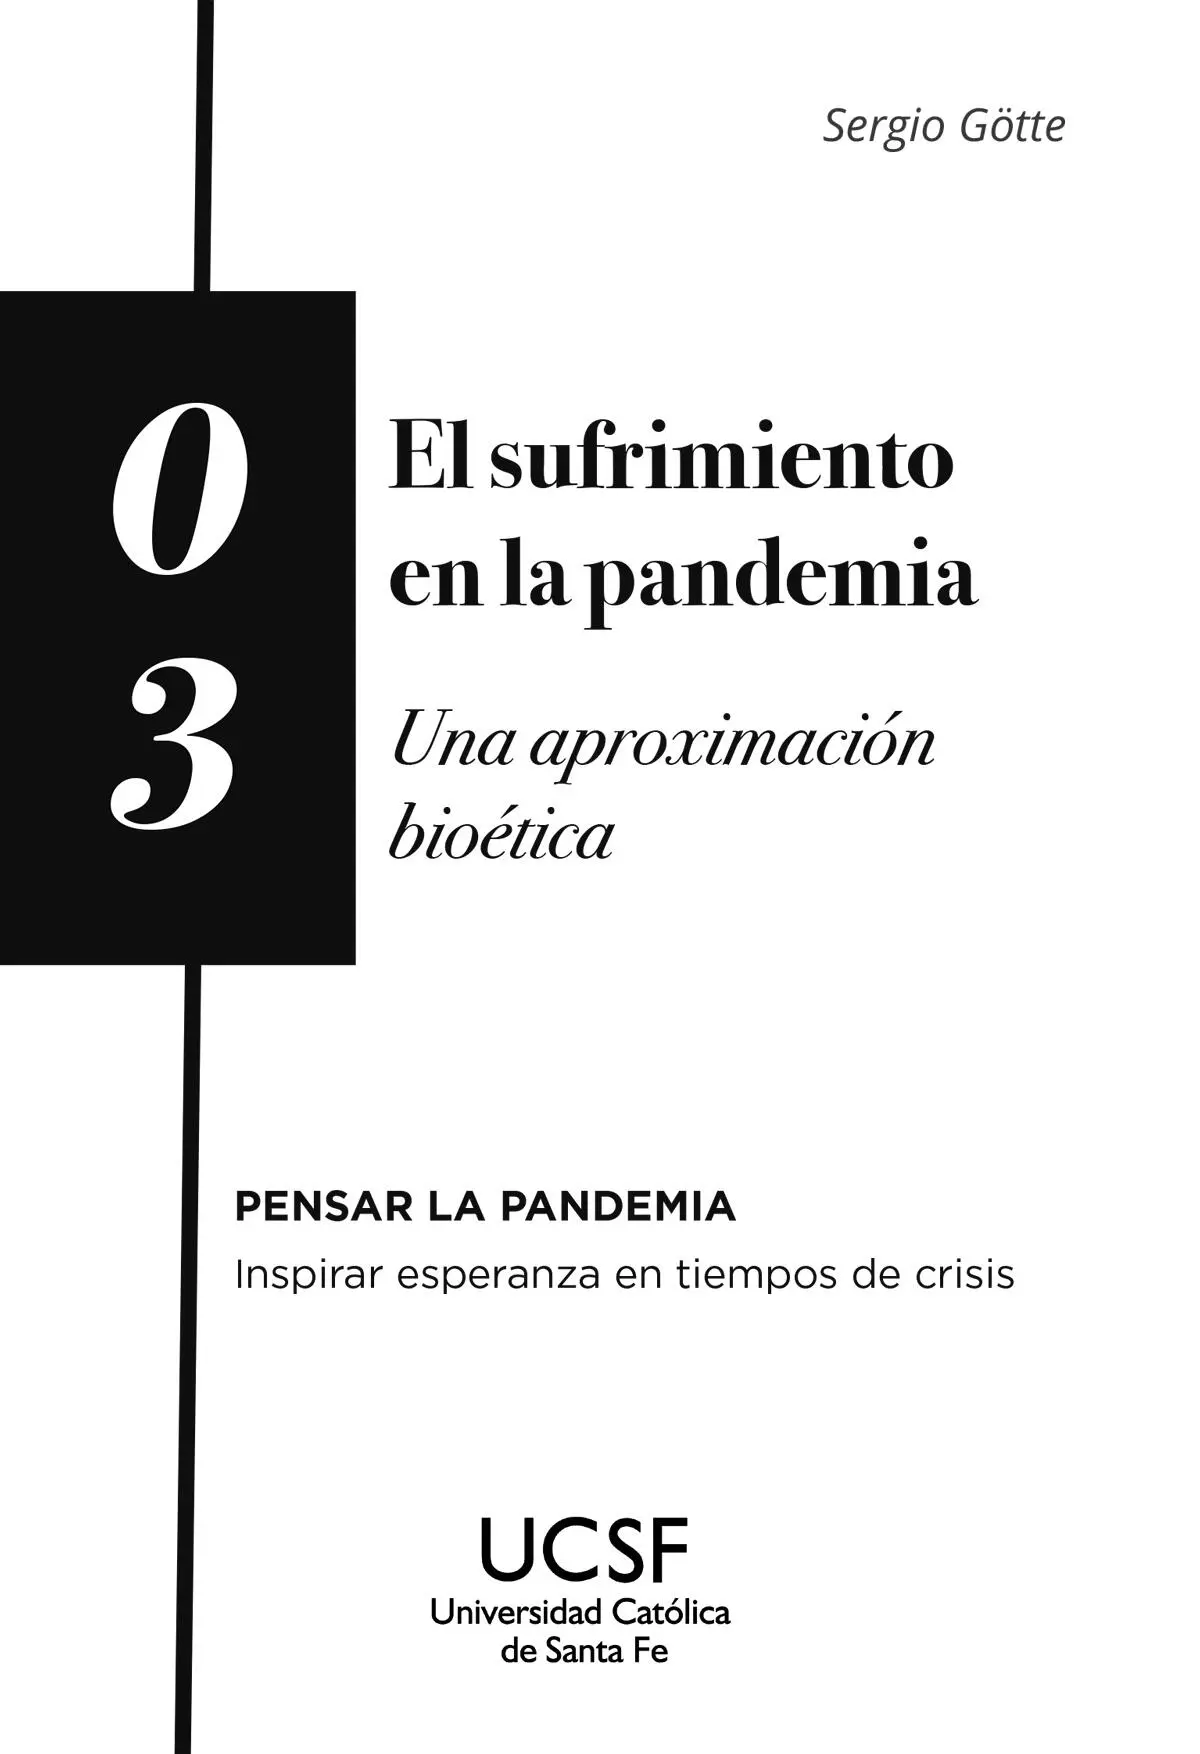 Götte Sergio El sufrimiento en la pandemia una aproximación bioética - фото 2